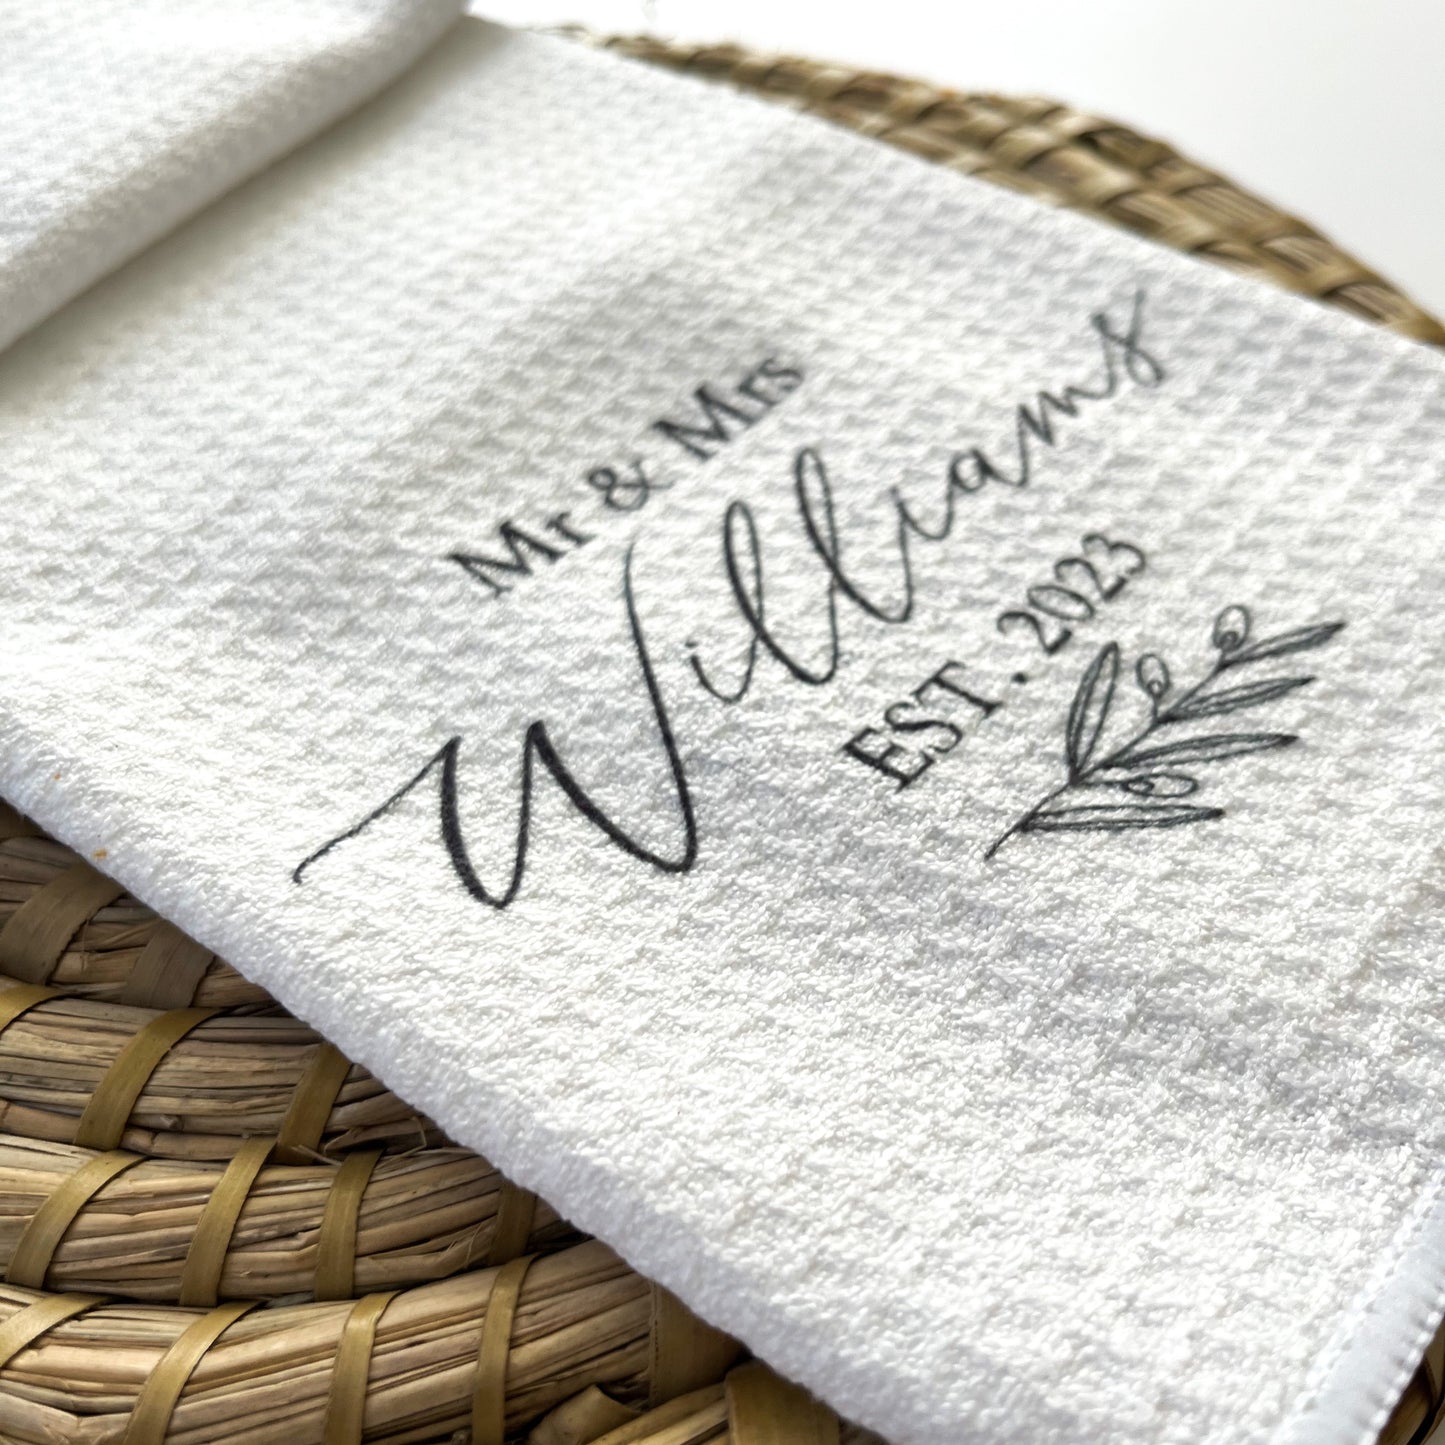 Personalised Waffle Tea Towel - Mr & Mrs/Mrs & Mrs/Mr & Mr